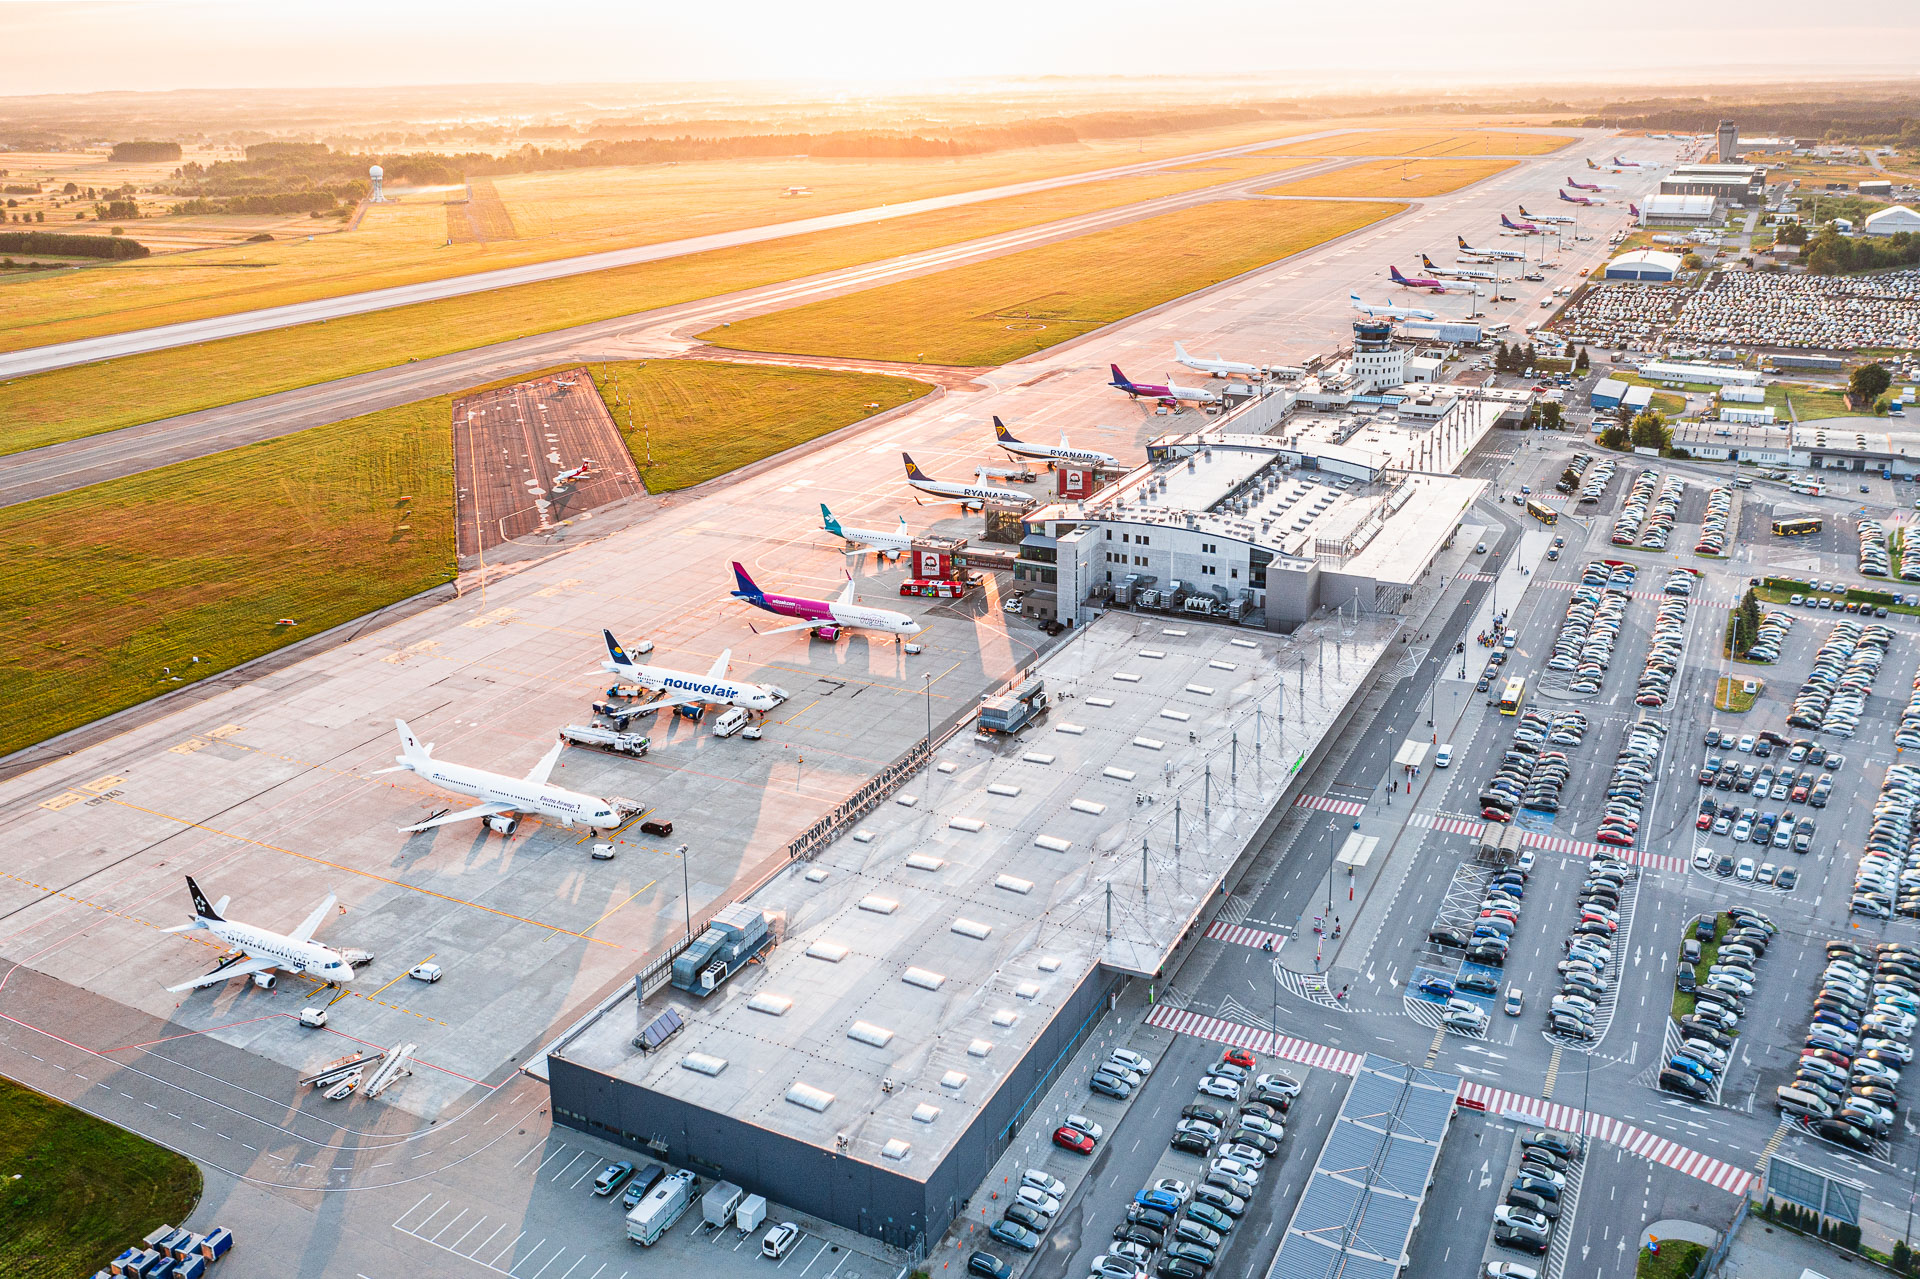 płyta postojowa Katowice Airport, widoczne samoloty i parkingi